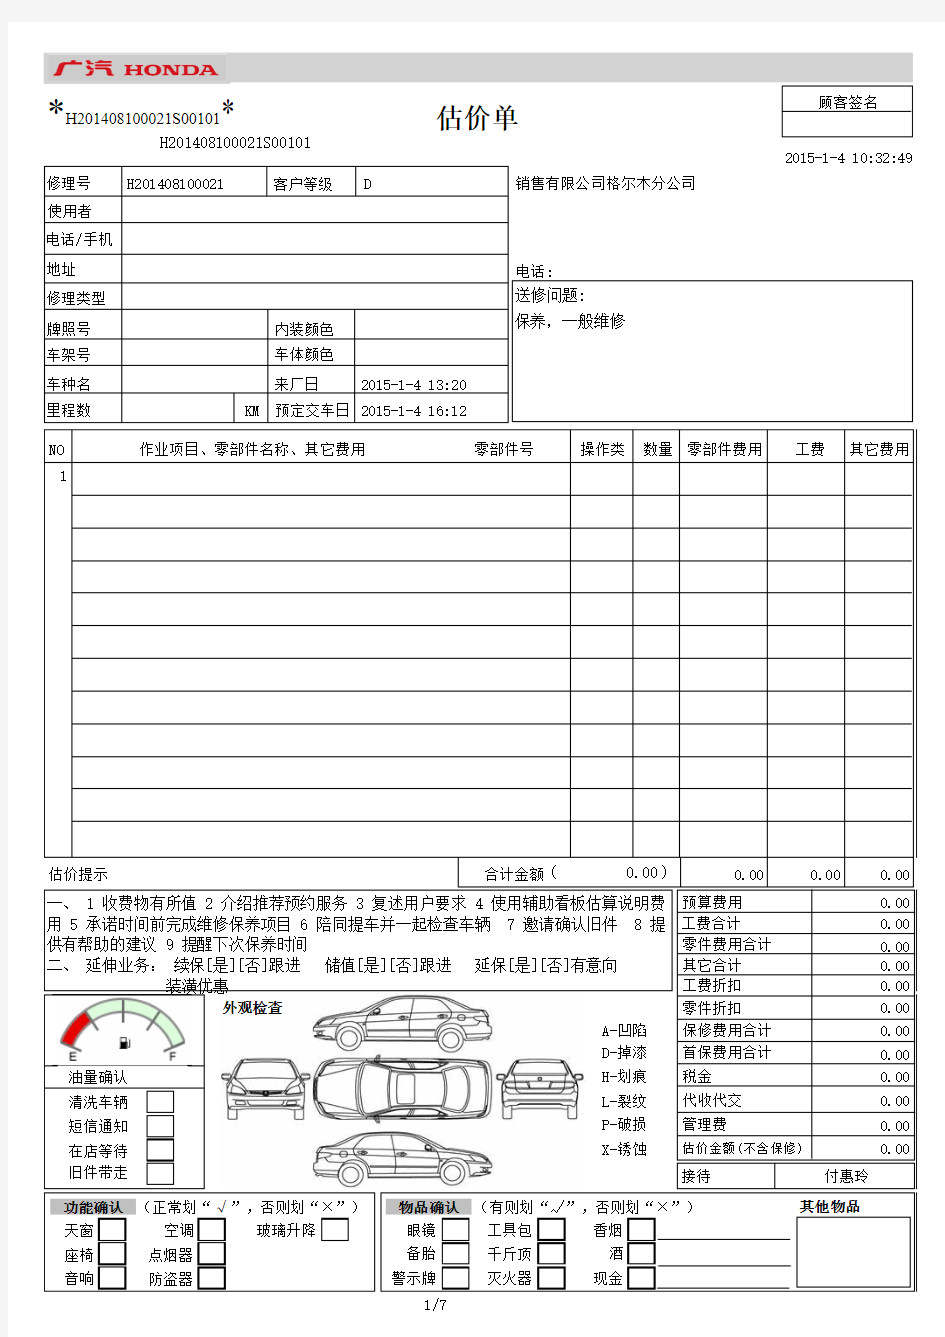 广州本田DMS系统问诊单模板